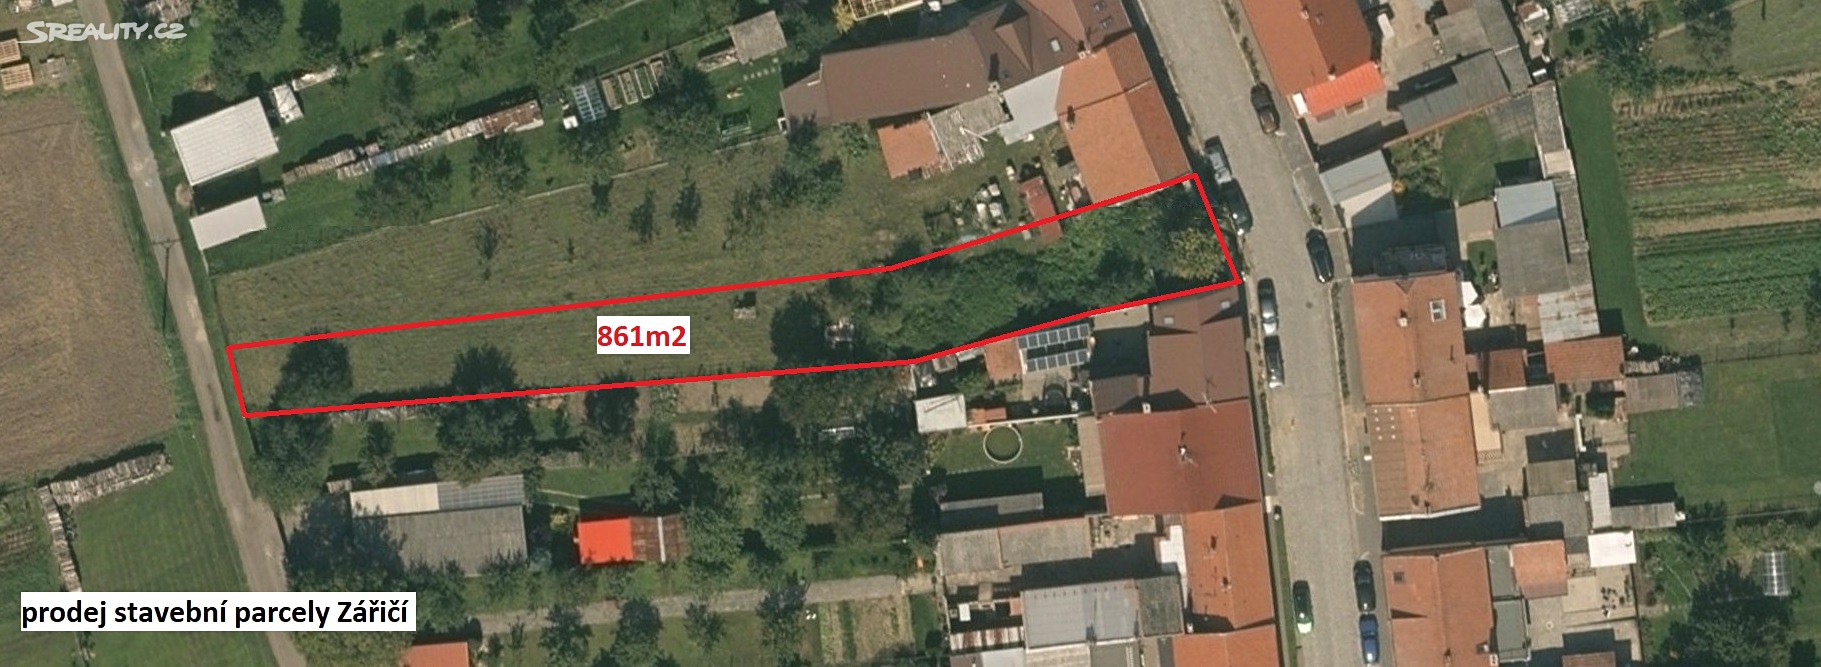 Prodej  stavebního pozemku 861 m², Záříčí, okres Kroměříž